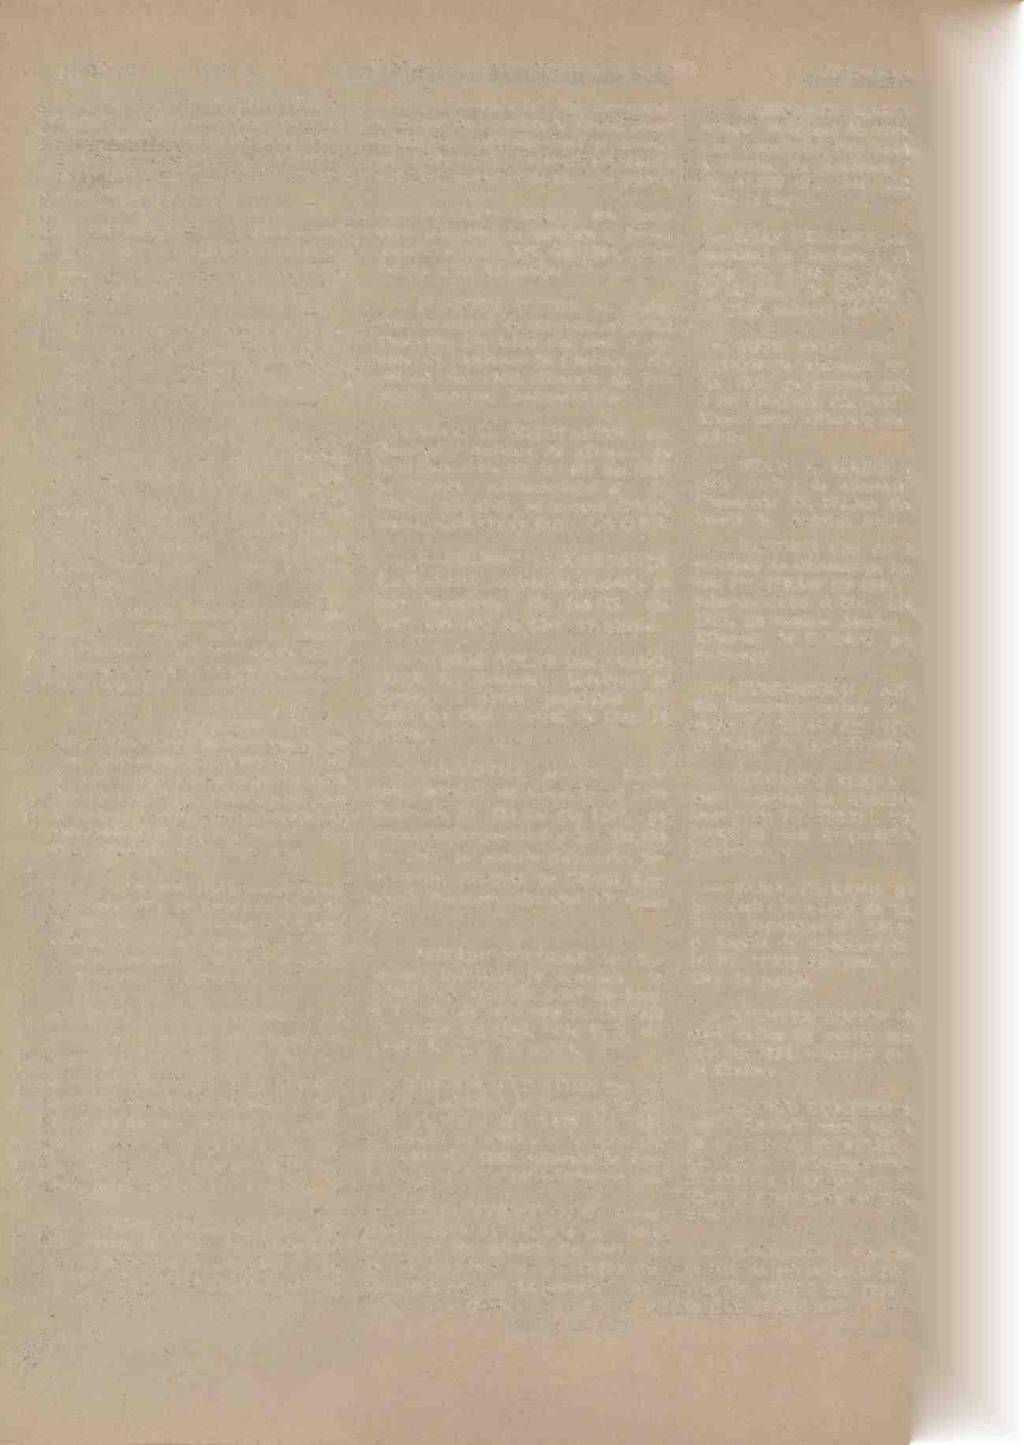 8072 MONITORUL OFICIAL (Partea II) Nr. 293 NICULESCU GHEORGRE din Bucureti: buletlnul de inscriere la Biroul populatiei Nr. 173.453 din 1936. si dovada de rärnalierc in Capita Id cu Nr. 28.